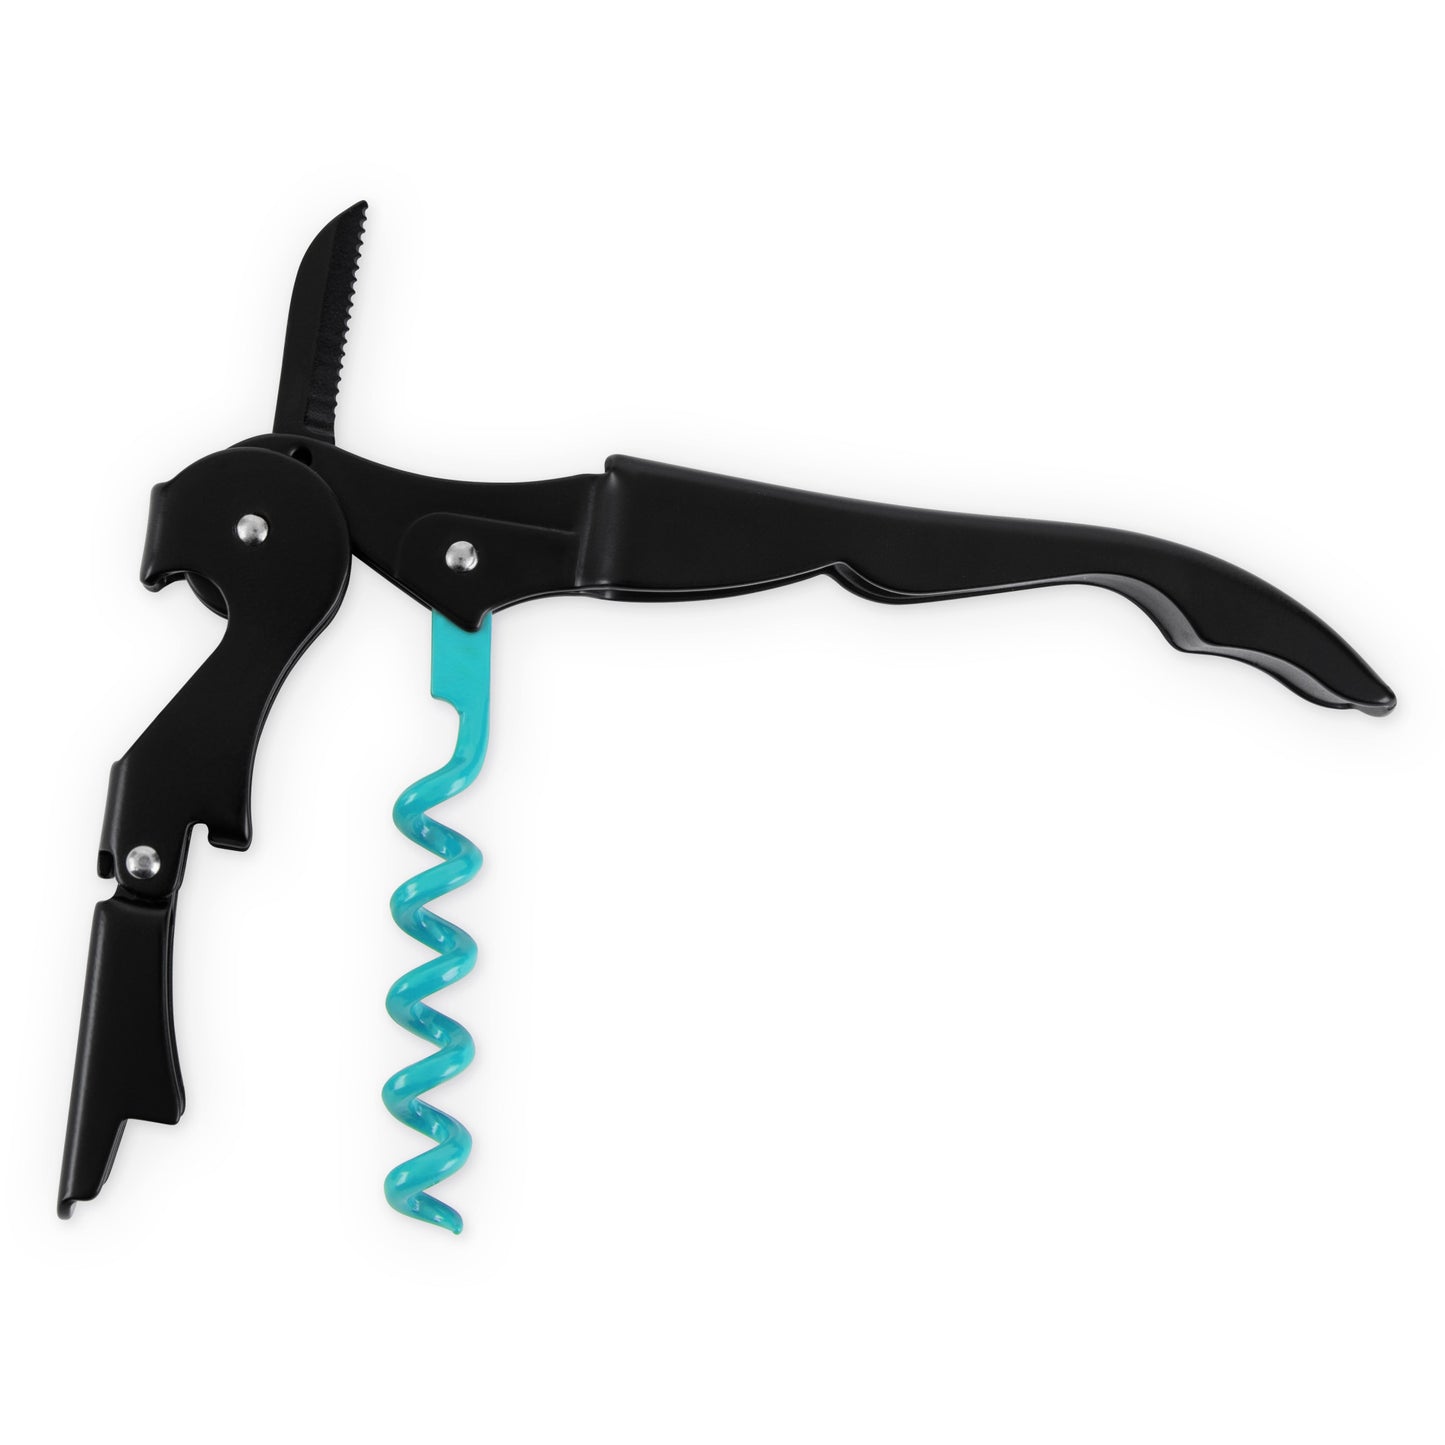 Truetap™: Double-Hinged Corkscrew in Matte Black with Blue W